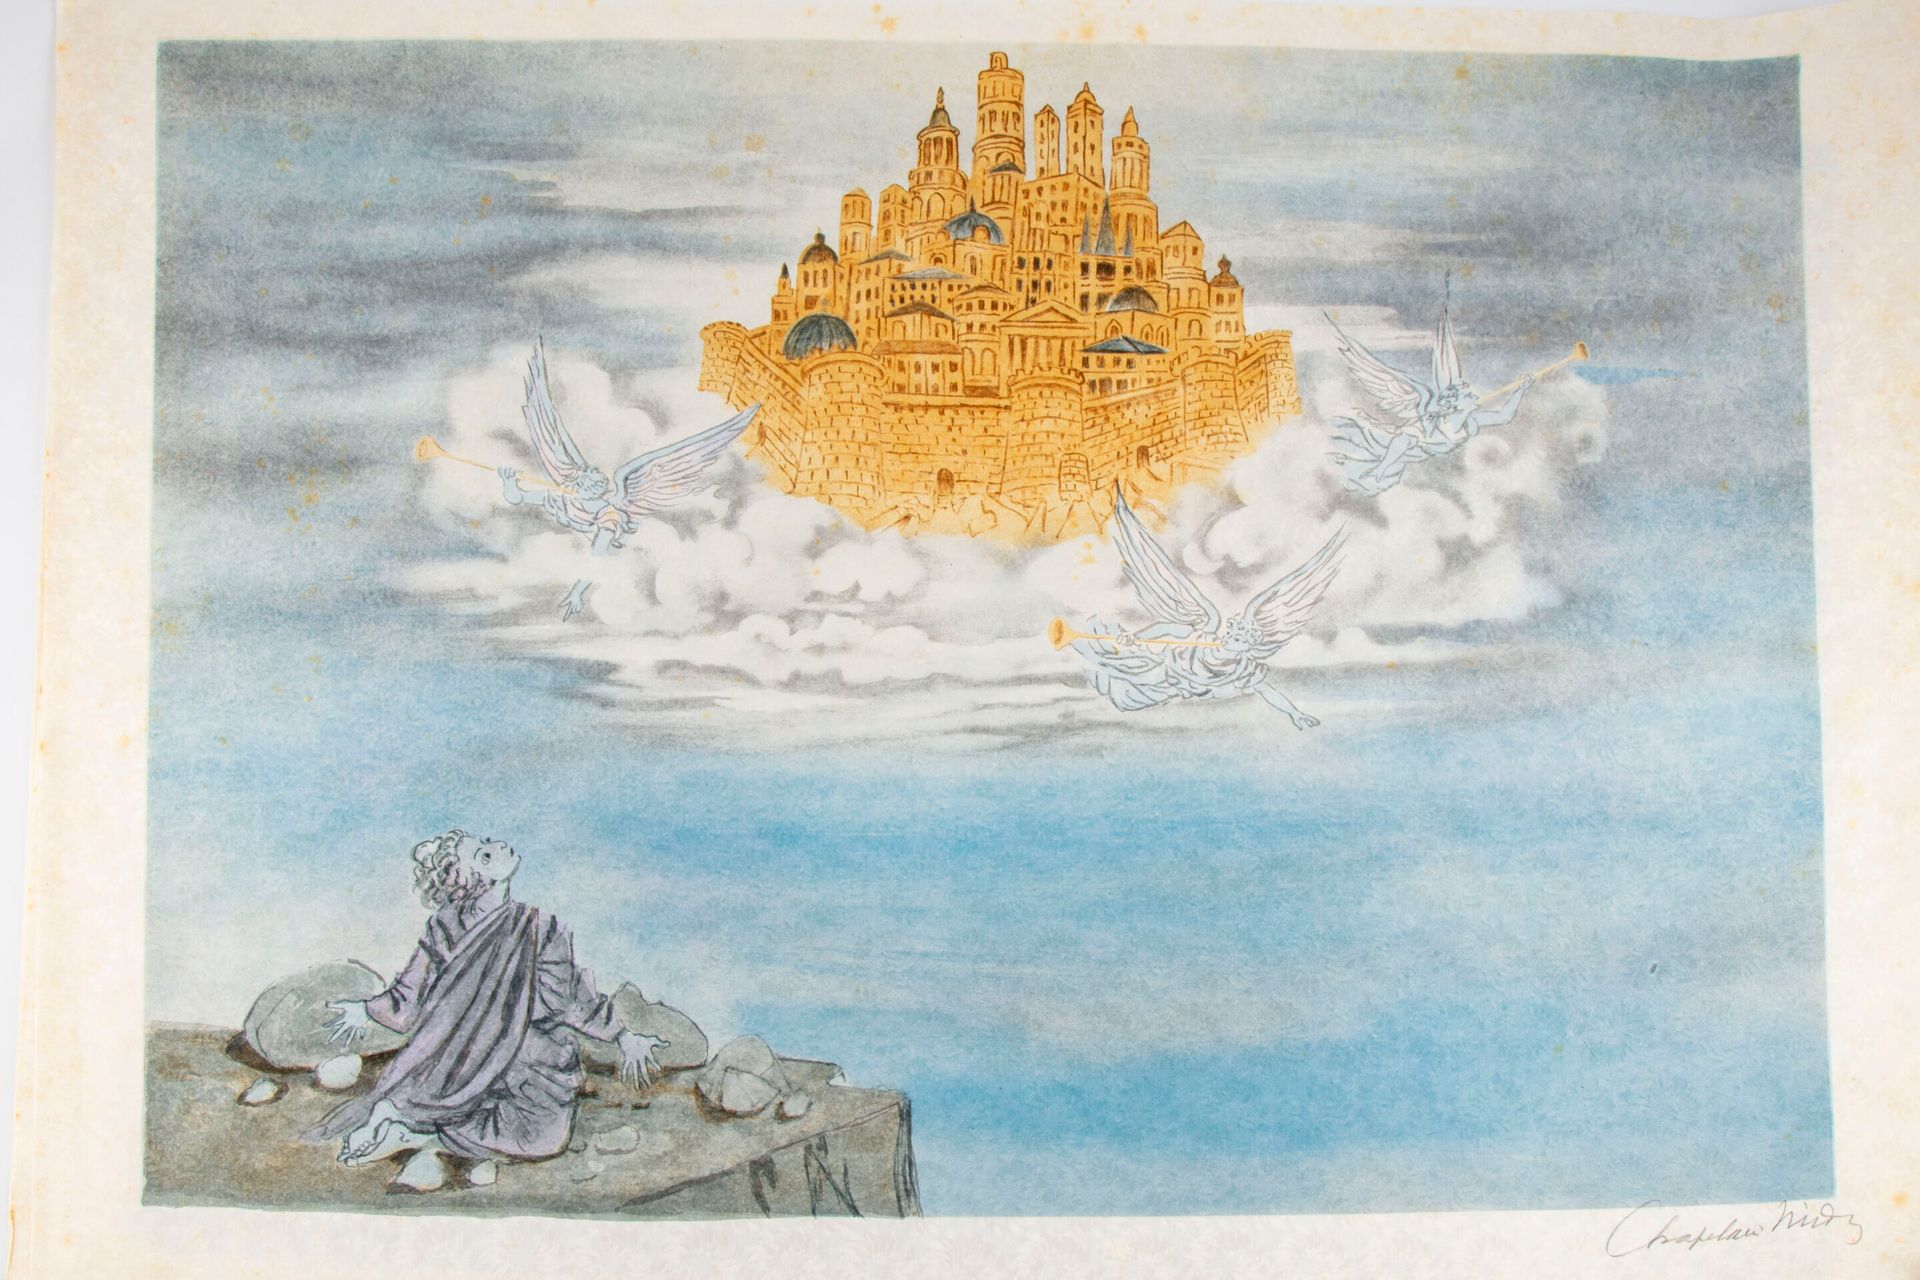 Null 罗杰-夏佩兰-米迪(1904-1992)

启示录

绢本石版画6件套（成片）。

右下方有签名

52,5 cm x 74 cm

(褪色和小褶皱)